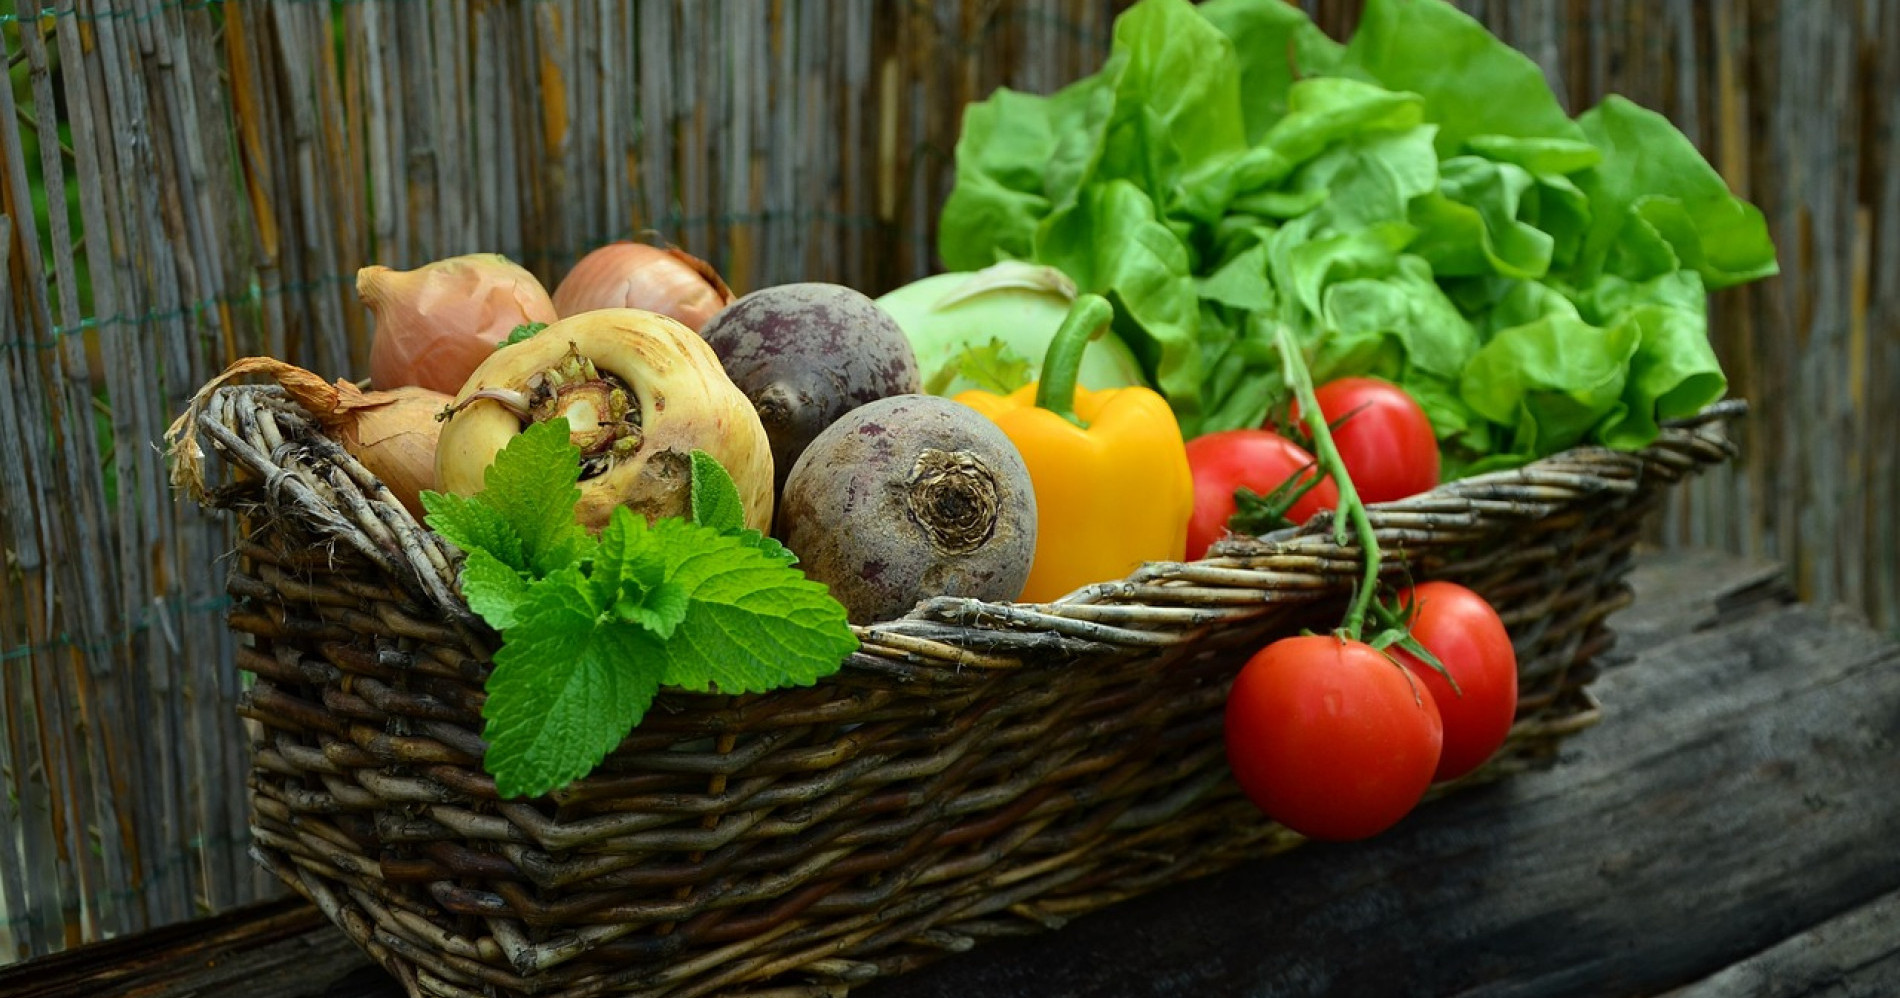 Sayuran sebagai salah satu sumber nutrisi. Sumber: pixabay